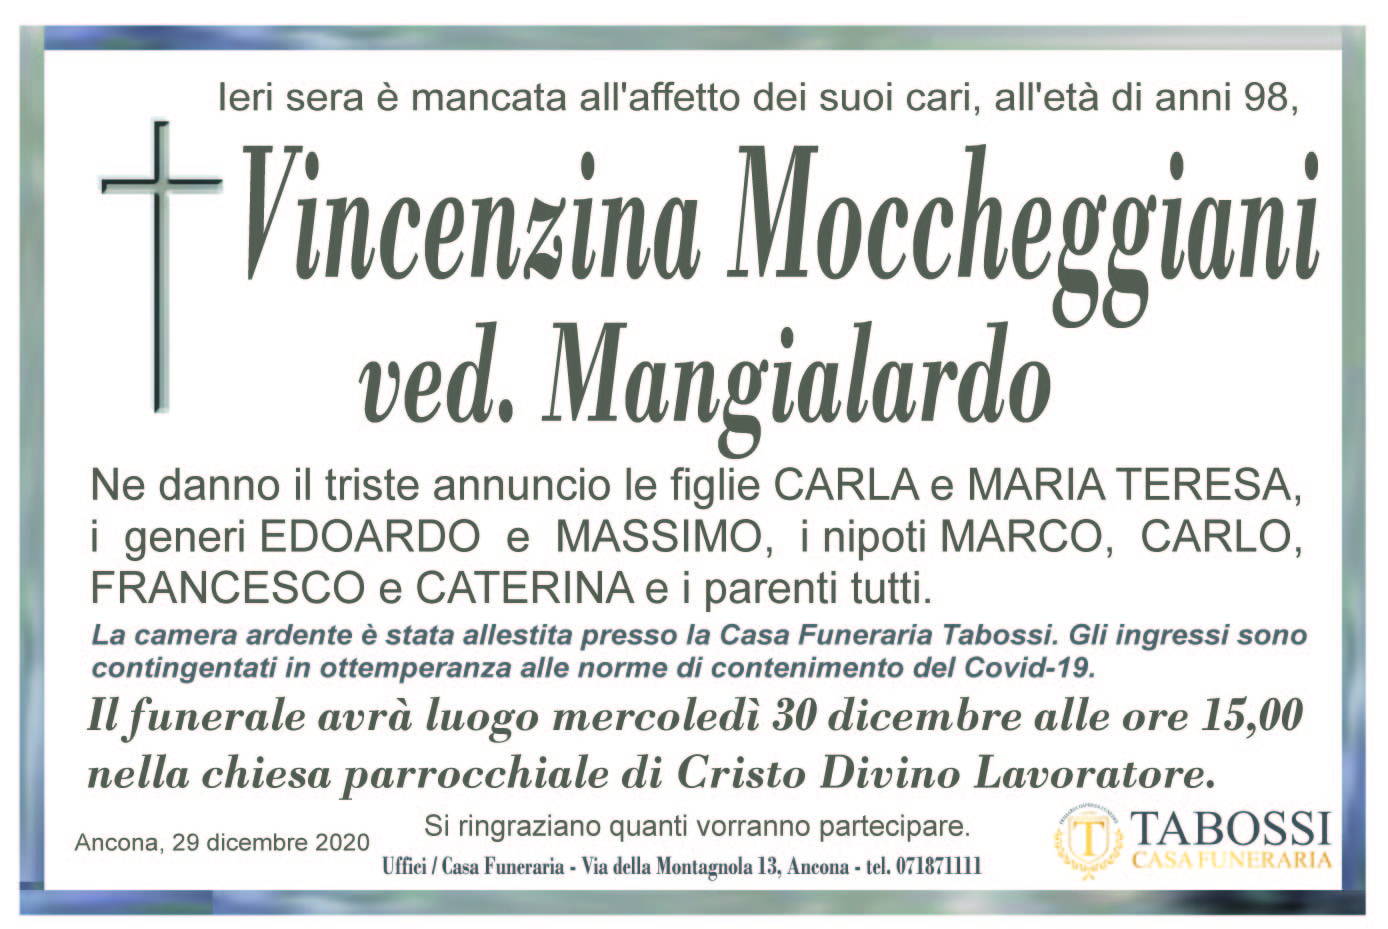 Vincenzina Moccheggiani